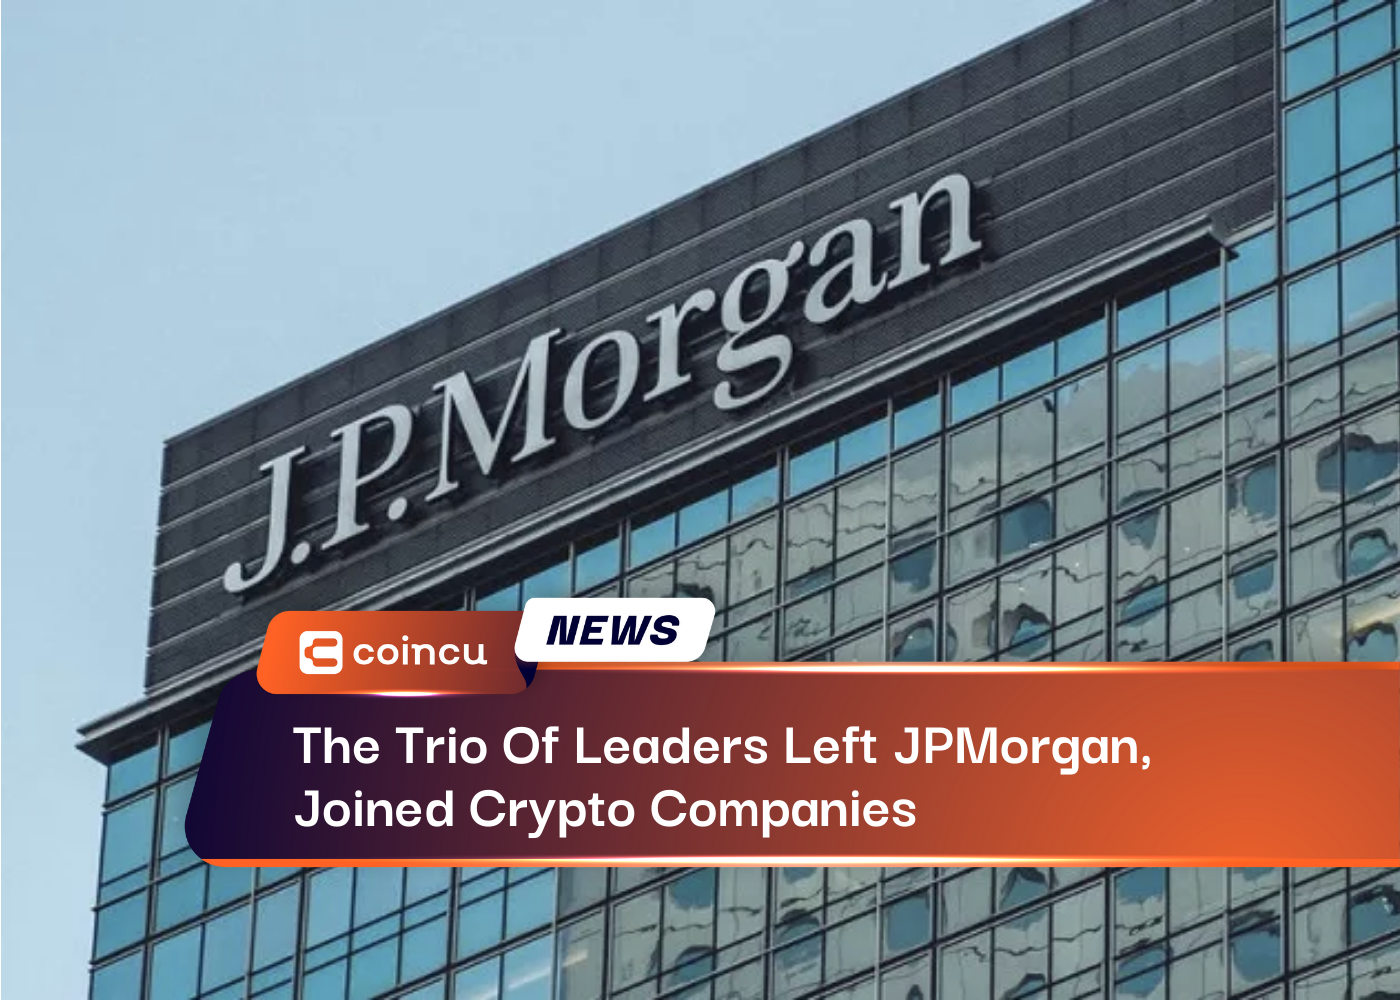 O trio de líderes deixou o JPMorgan e ingressou em empresas de criptografia